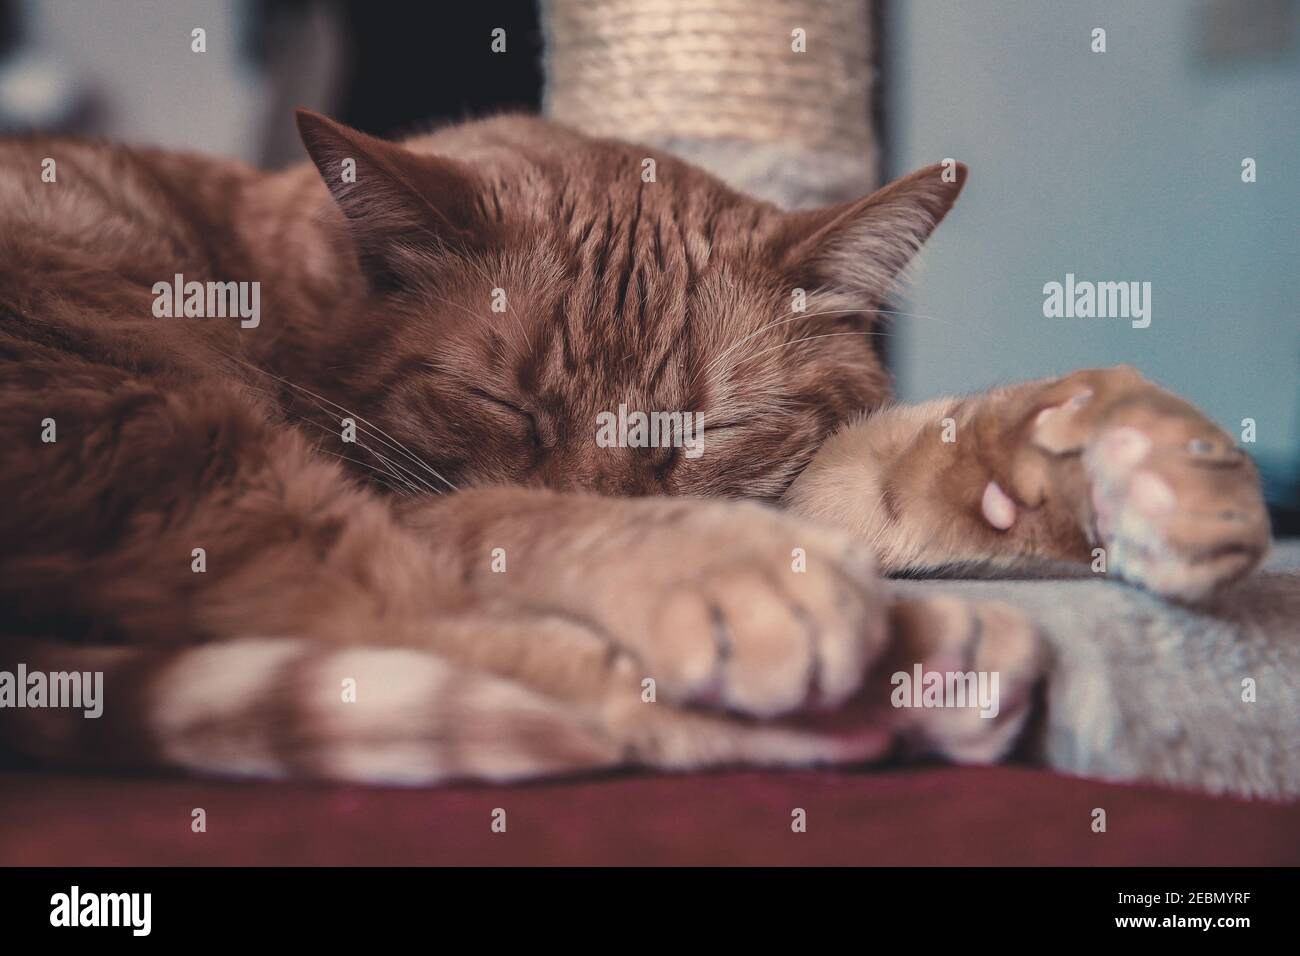 Hermoso gato durmiendo en casa. Primer retrato de una mascota relajándose con los ojos cerrados. Orejas rectas, vibrissas y patas tiernas. Animal con piel roja asl Foto de stock